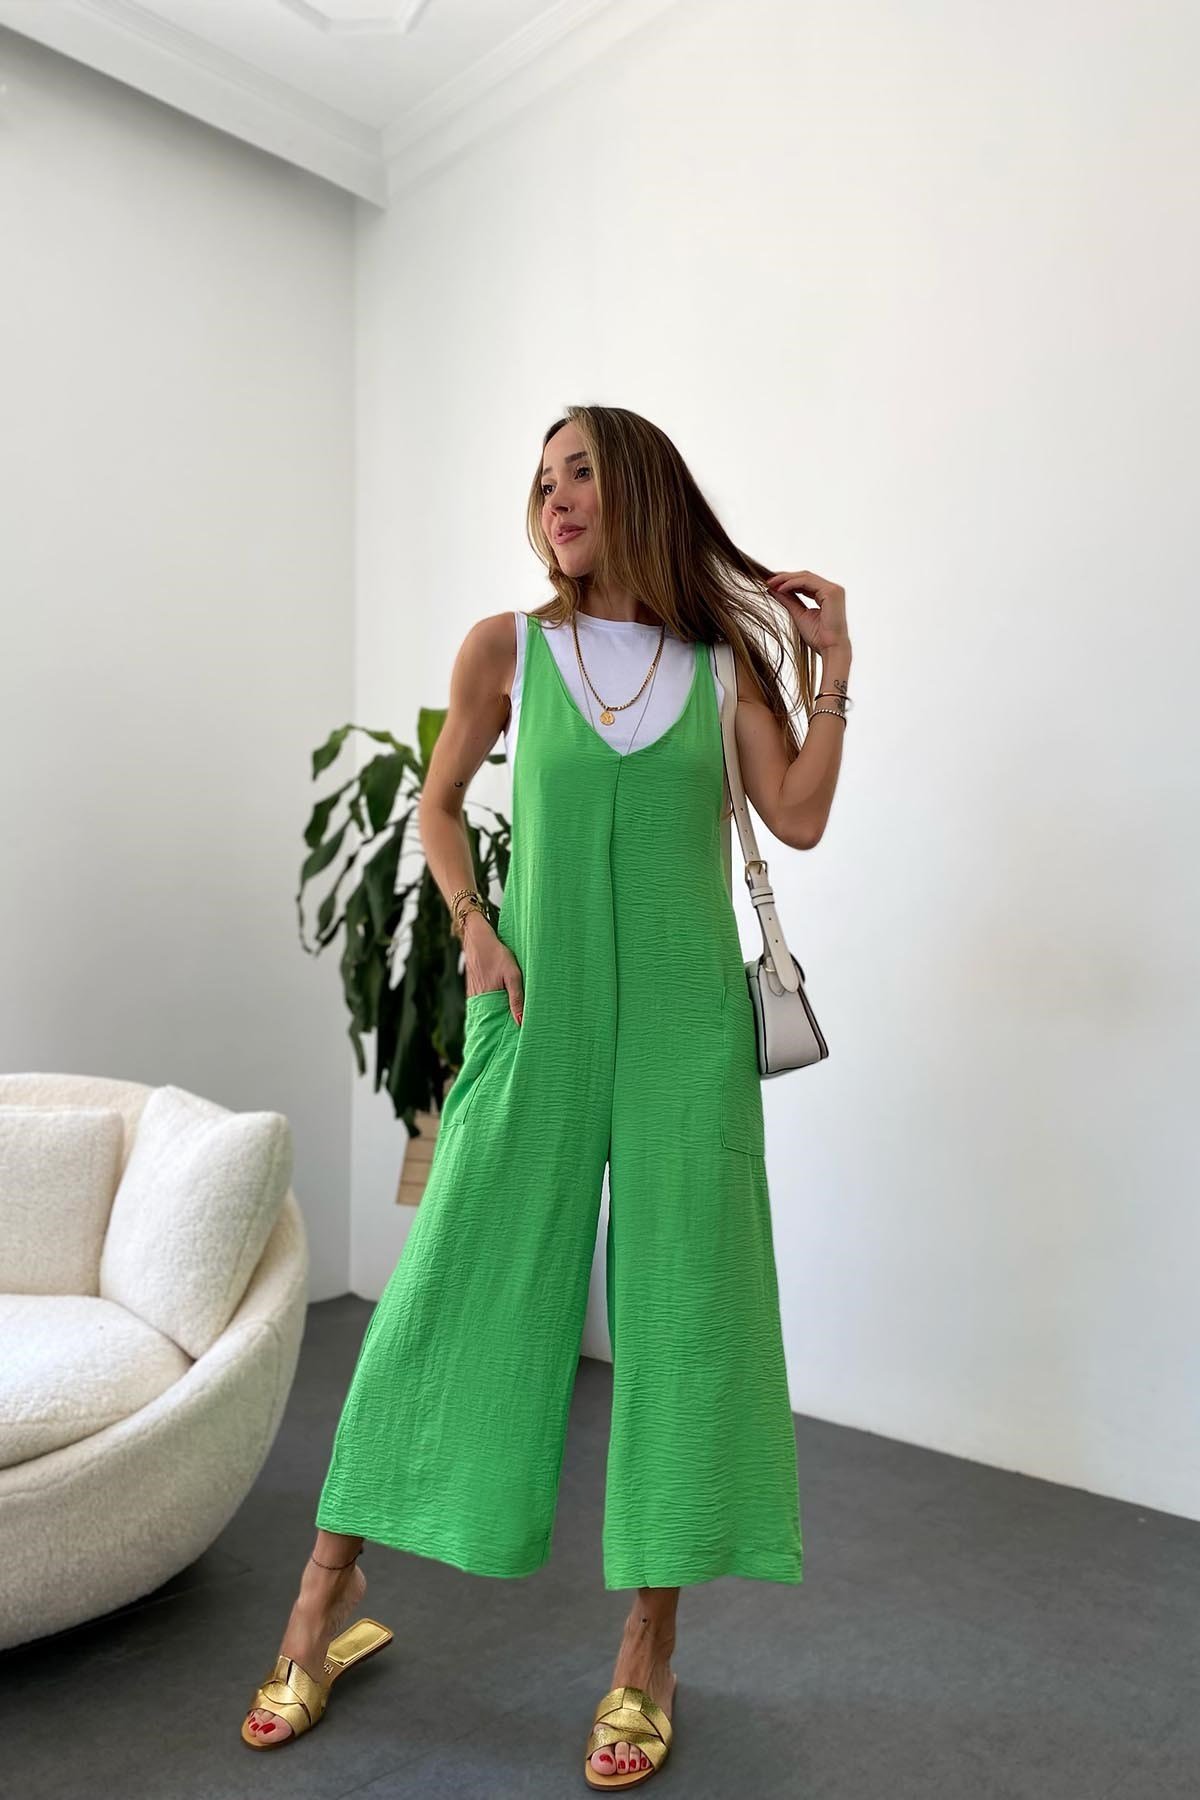 Zara Model Askılı Tulum - Yeşil - Butik Gardrop